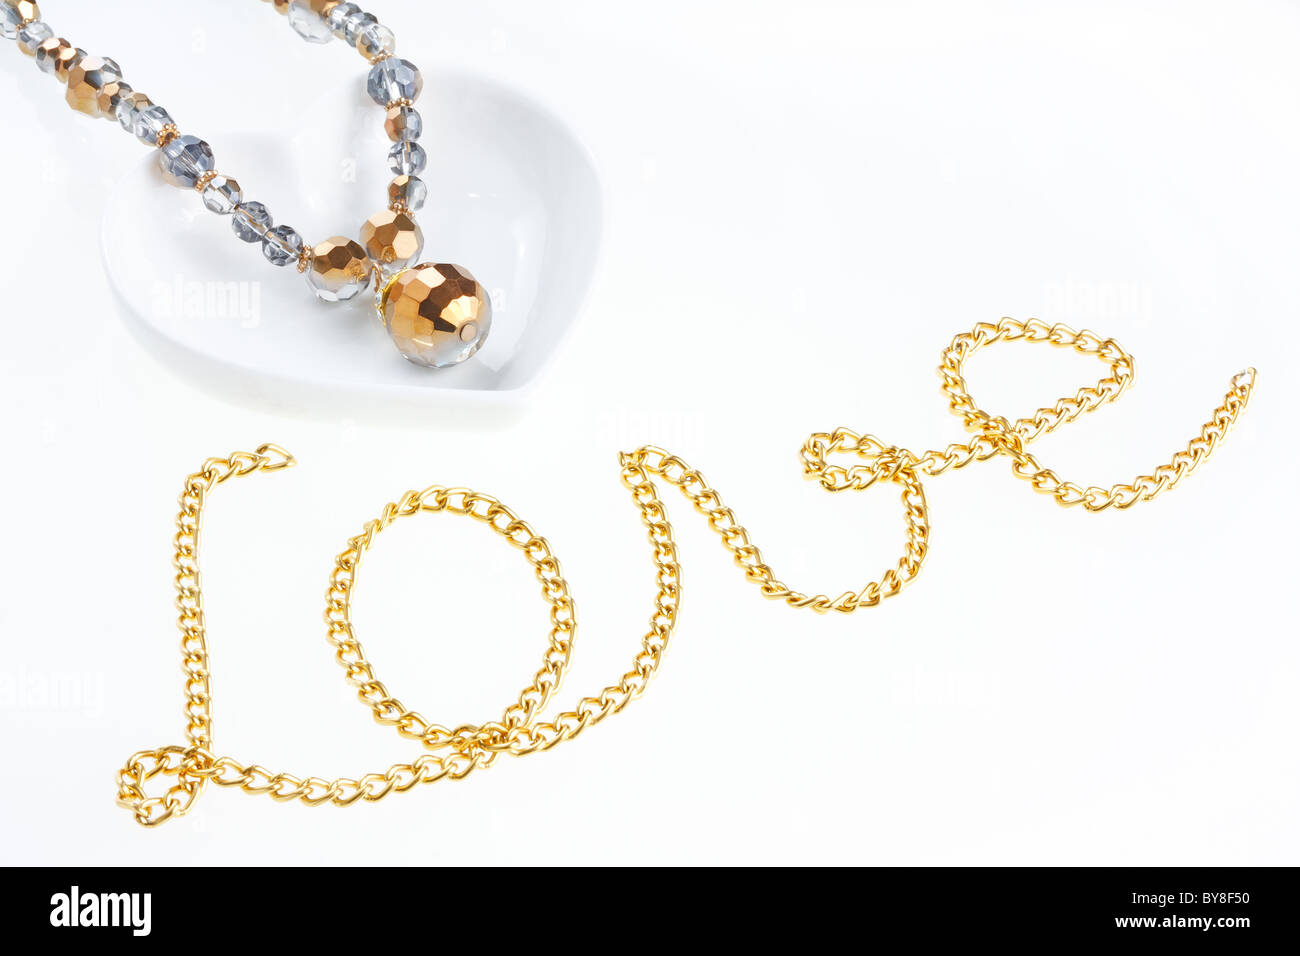 Collier bijoux en forme de coeur sur une soucoupe et chaîne en métal jaune disposés en forme de mot amour Banque D'Images